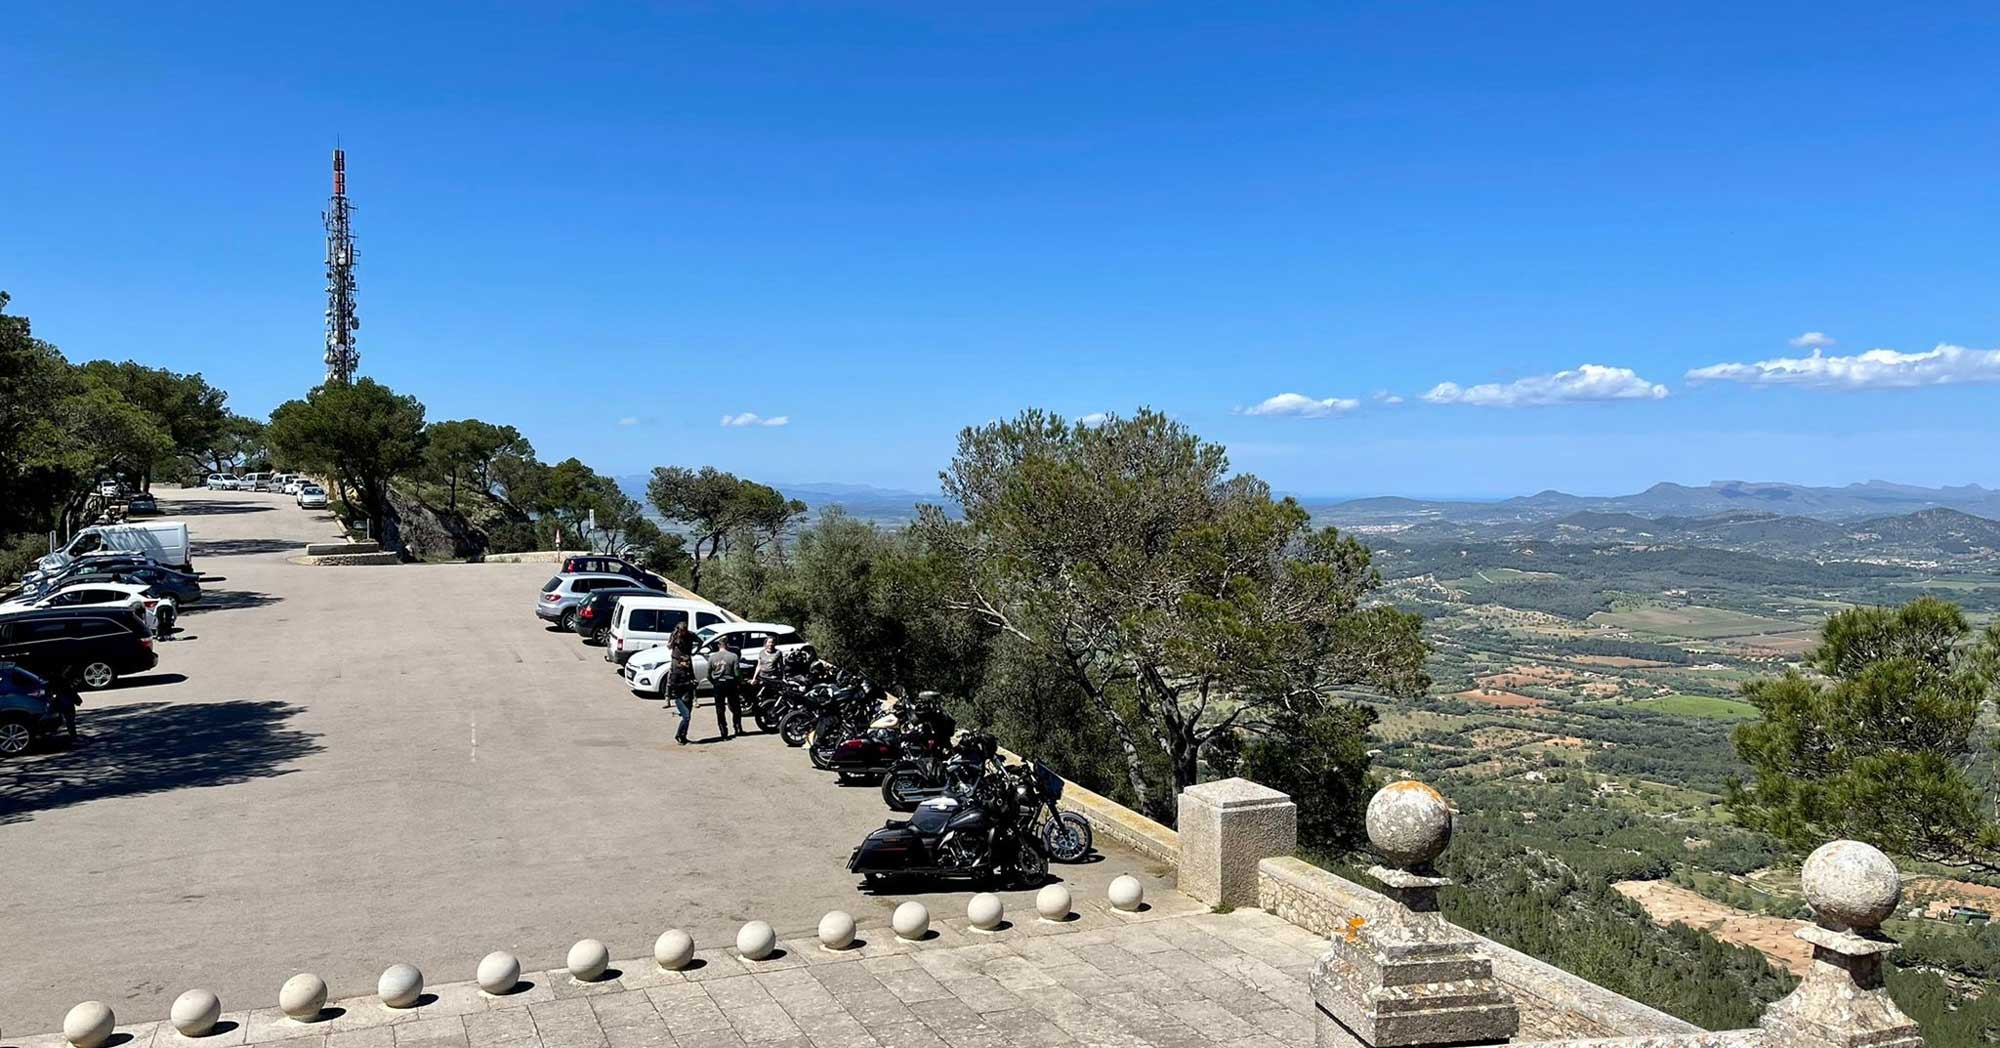 Erster Tag Mallorca ERFAHREN 2022 mit M-Motorradreisen sensationeller Ausblick